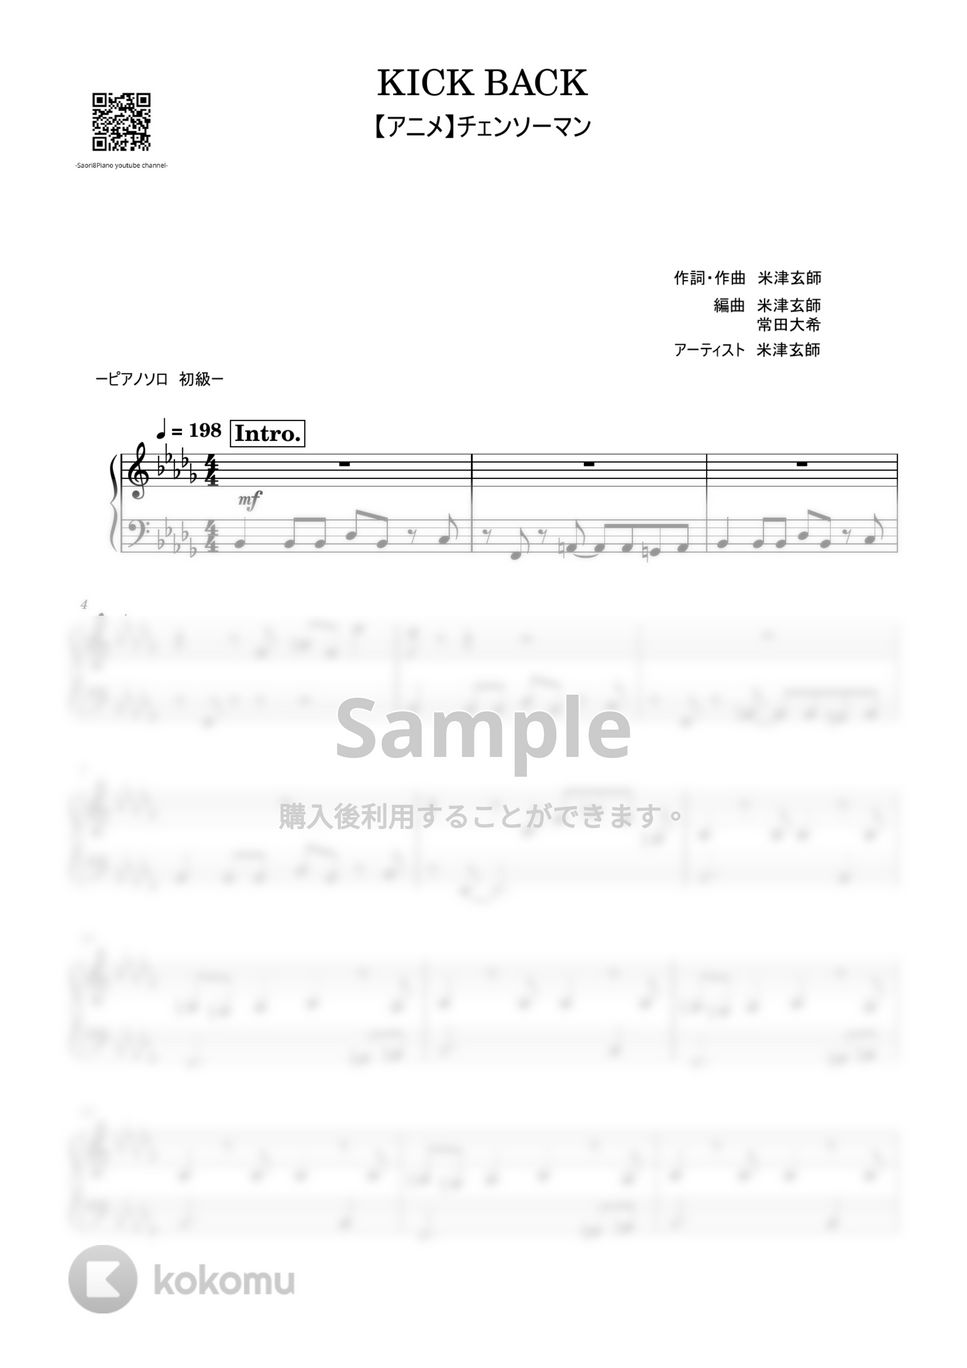 米津玄師 - KICK BACK (チェンソーマンOP/初級レベル) by Saori8Piano